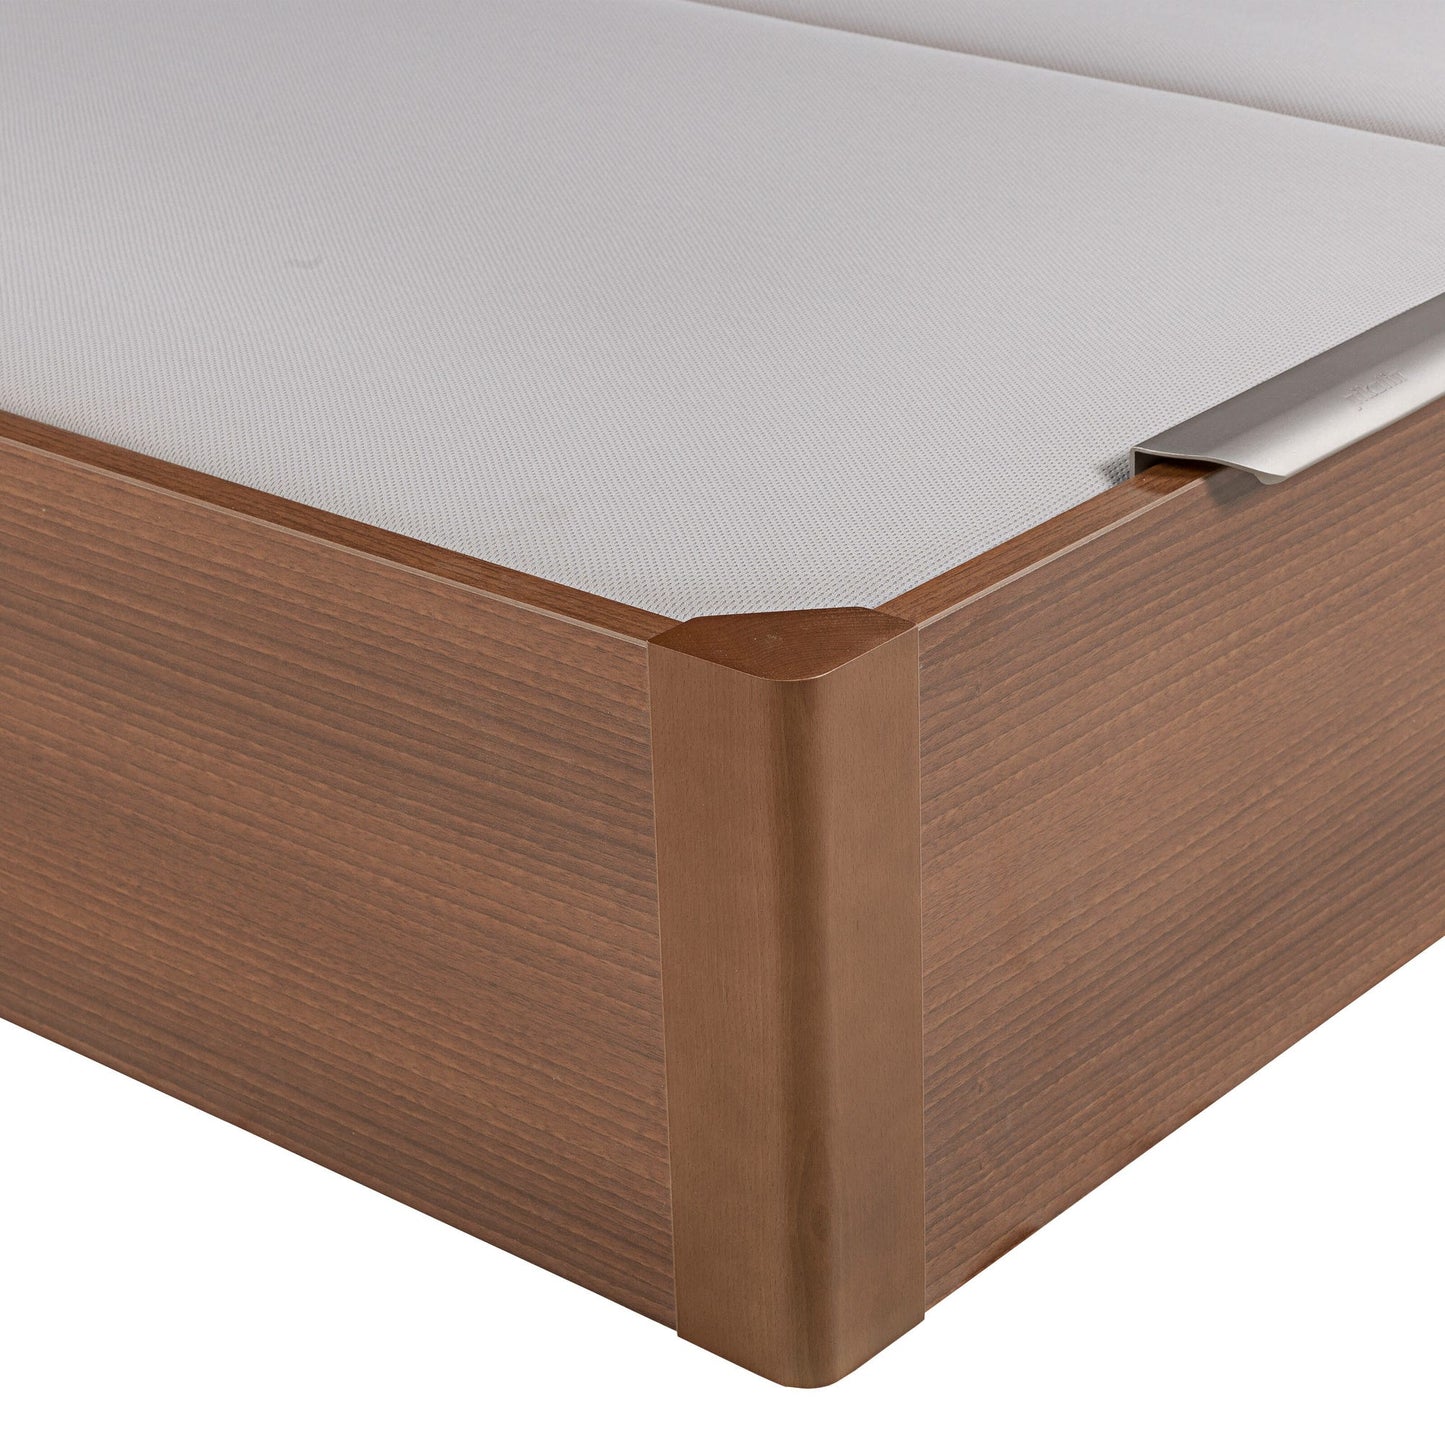 Canapé abatible de madera de tapa doble de color cerezo - DESIGN - 200x220